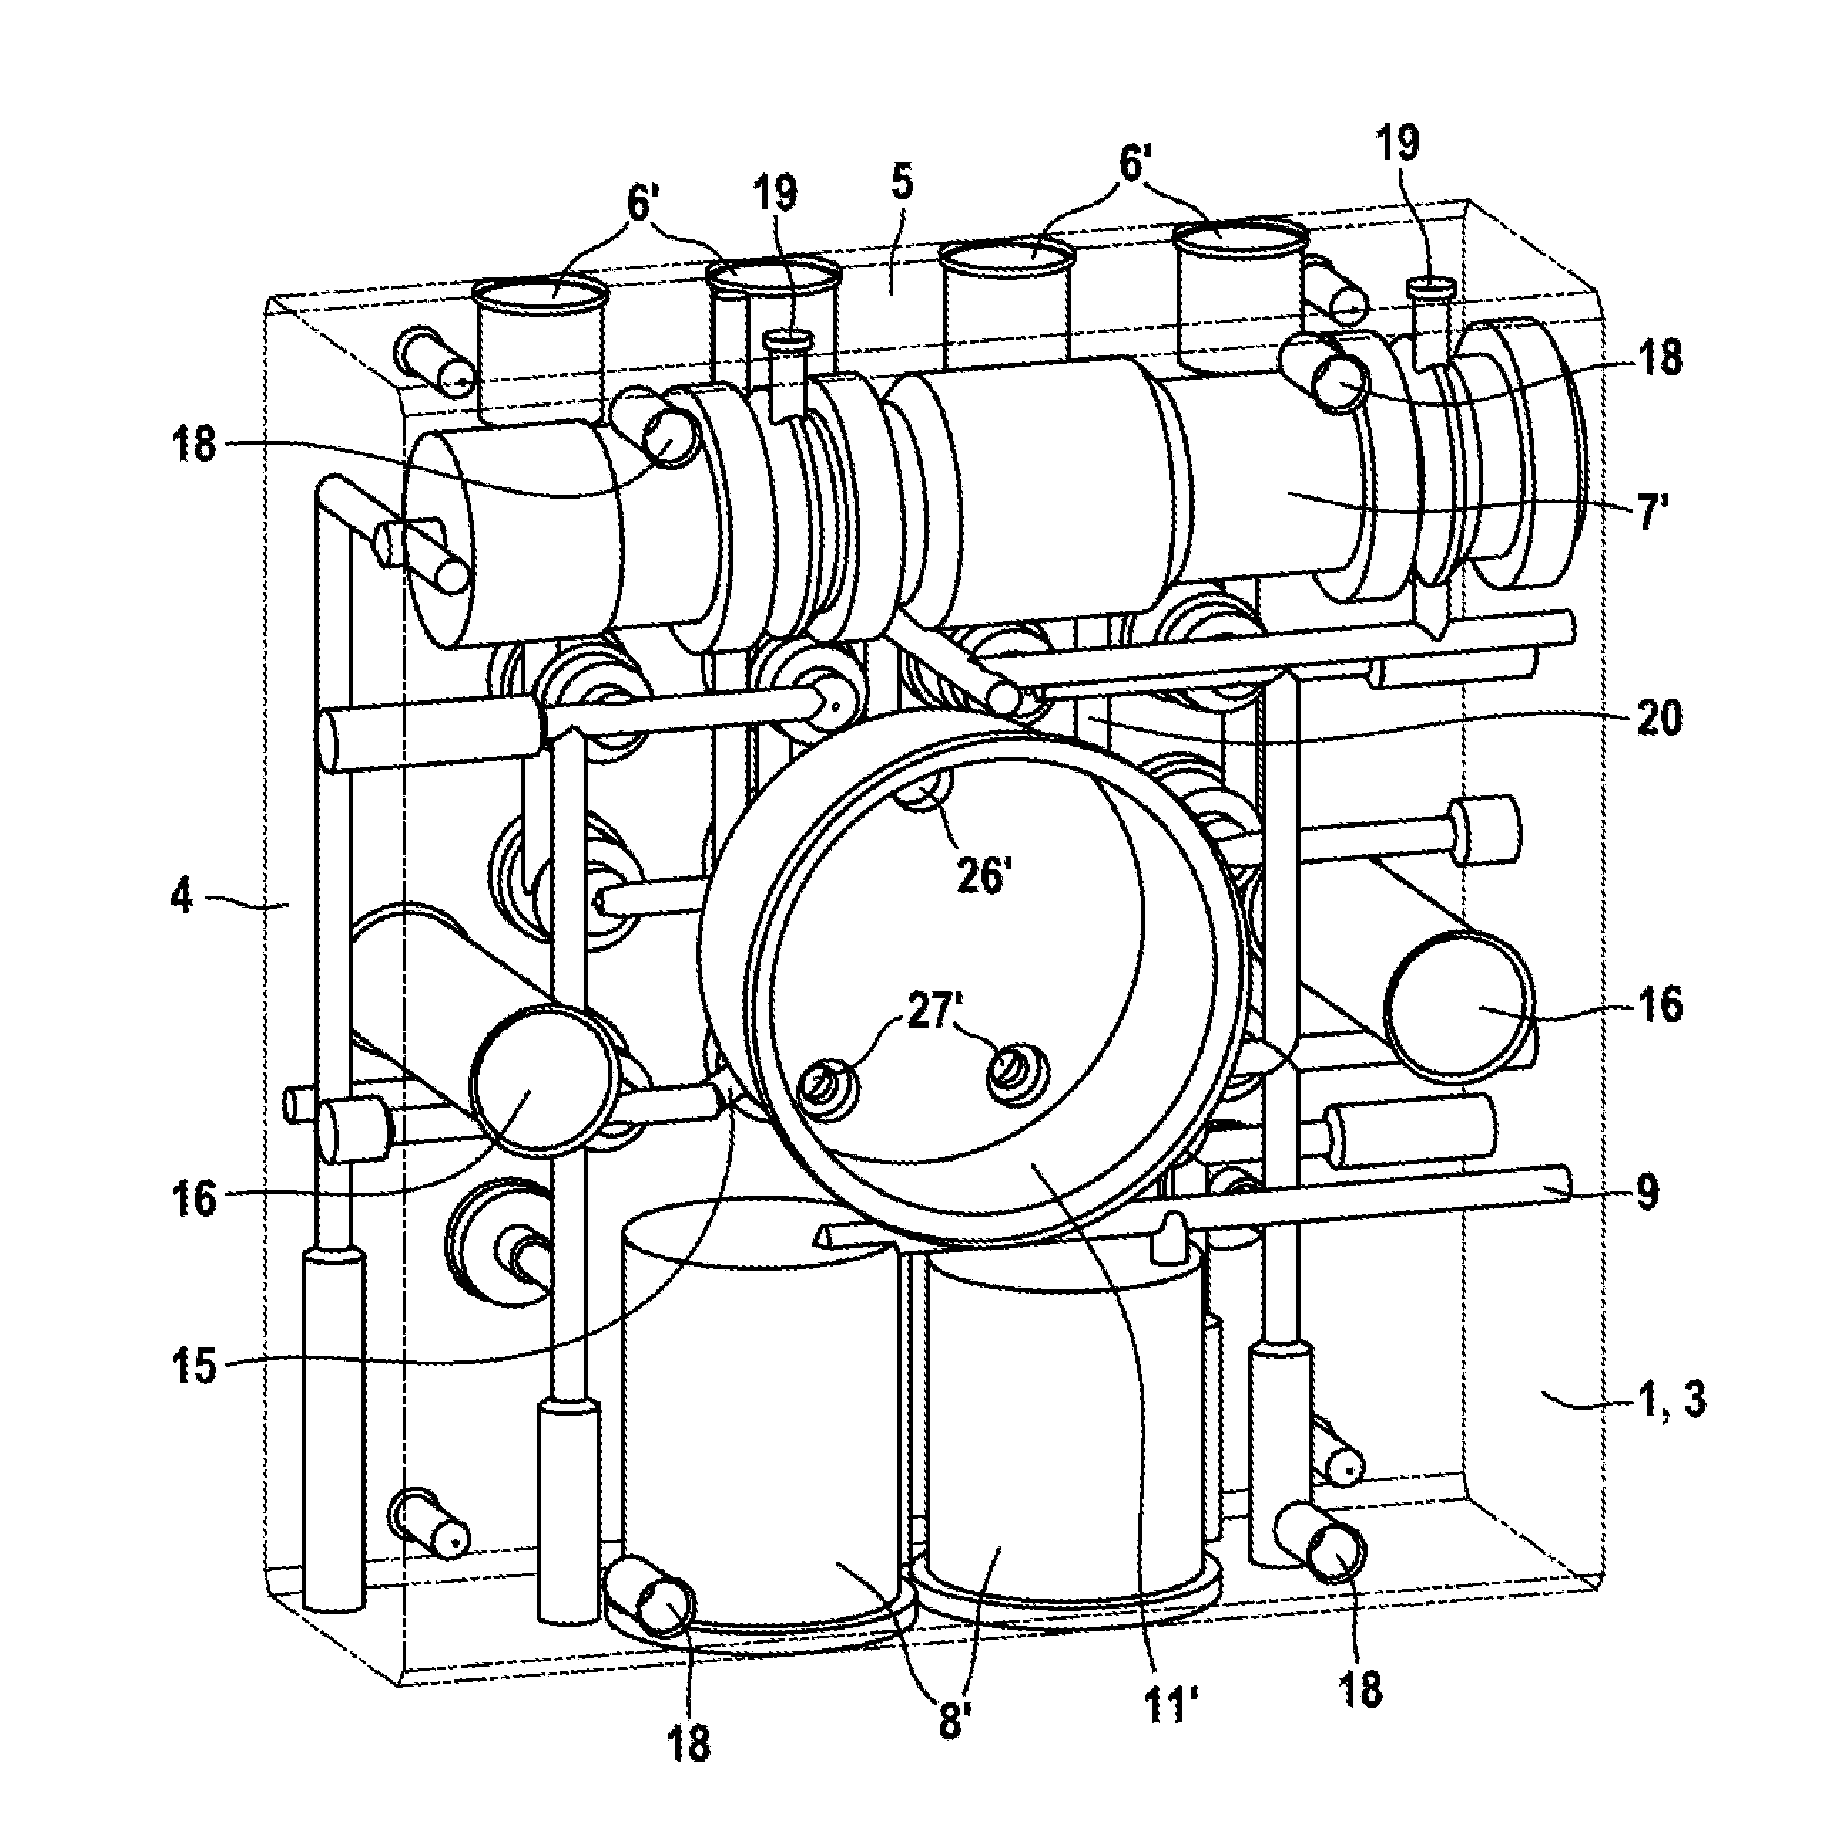 Hydraulic Block for a Hydraulic Power Unit of a Hydraulic Vehicle Brake System